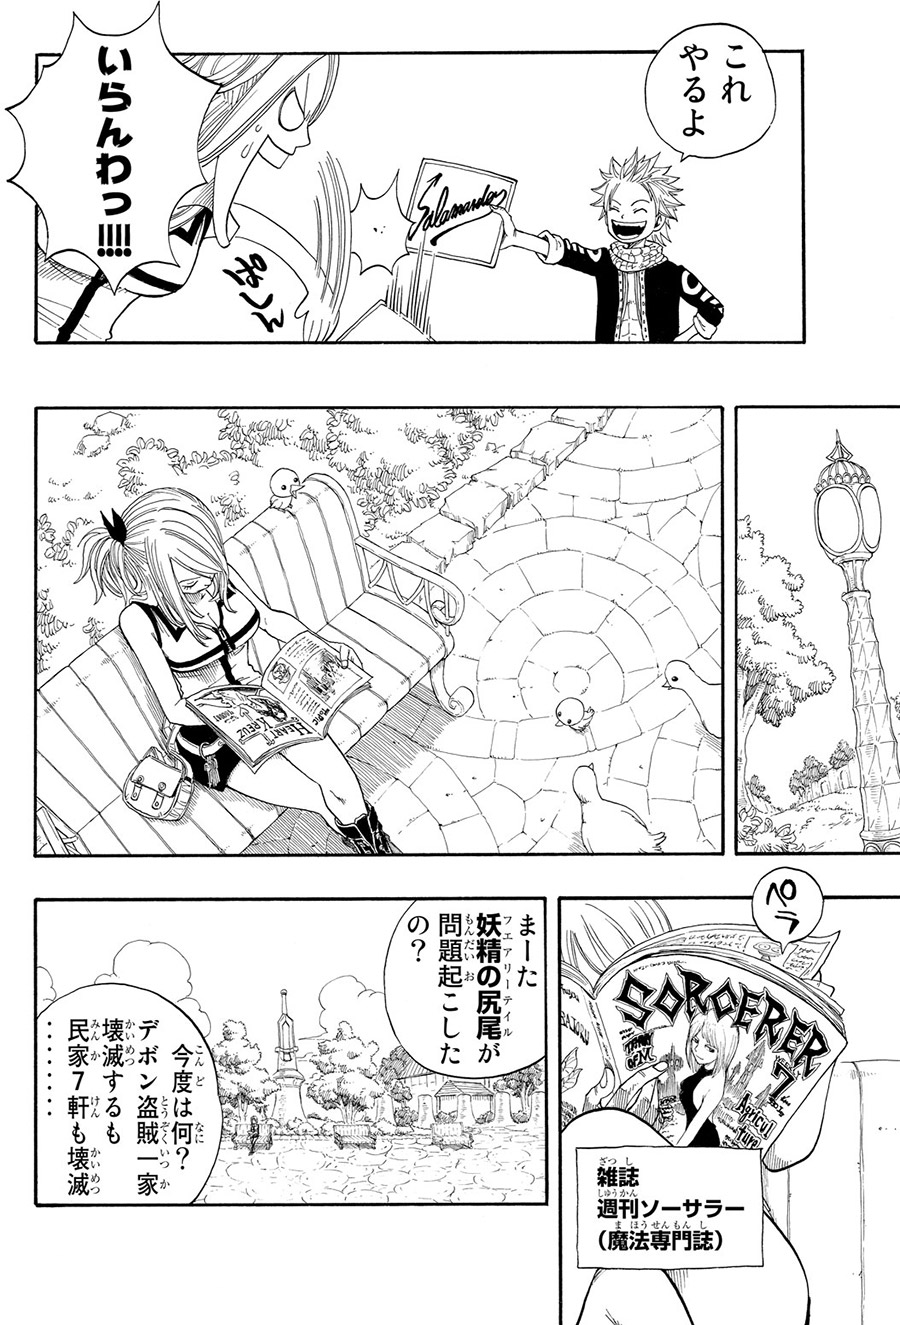 真島ヒロの大人気作 Fairy Tail 40巻無料公開 21 1 30まで 今日のおすすめ 講談社コミックプラス